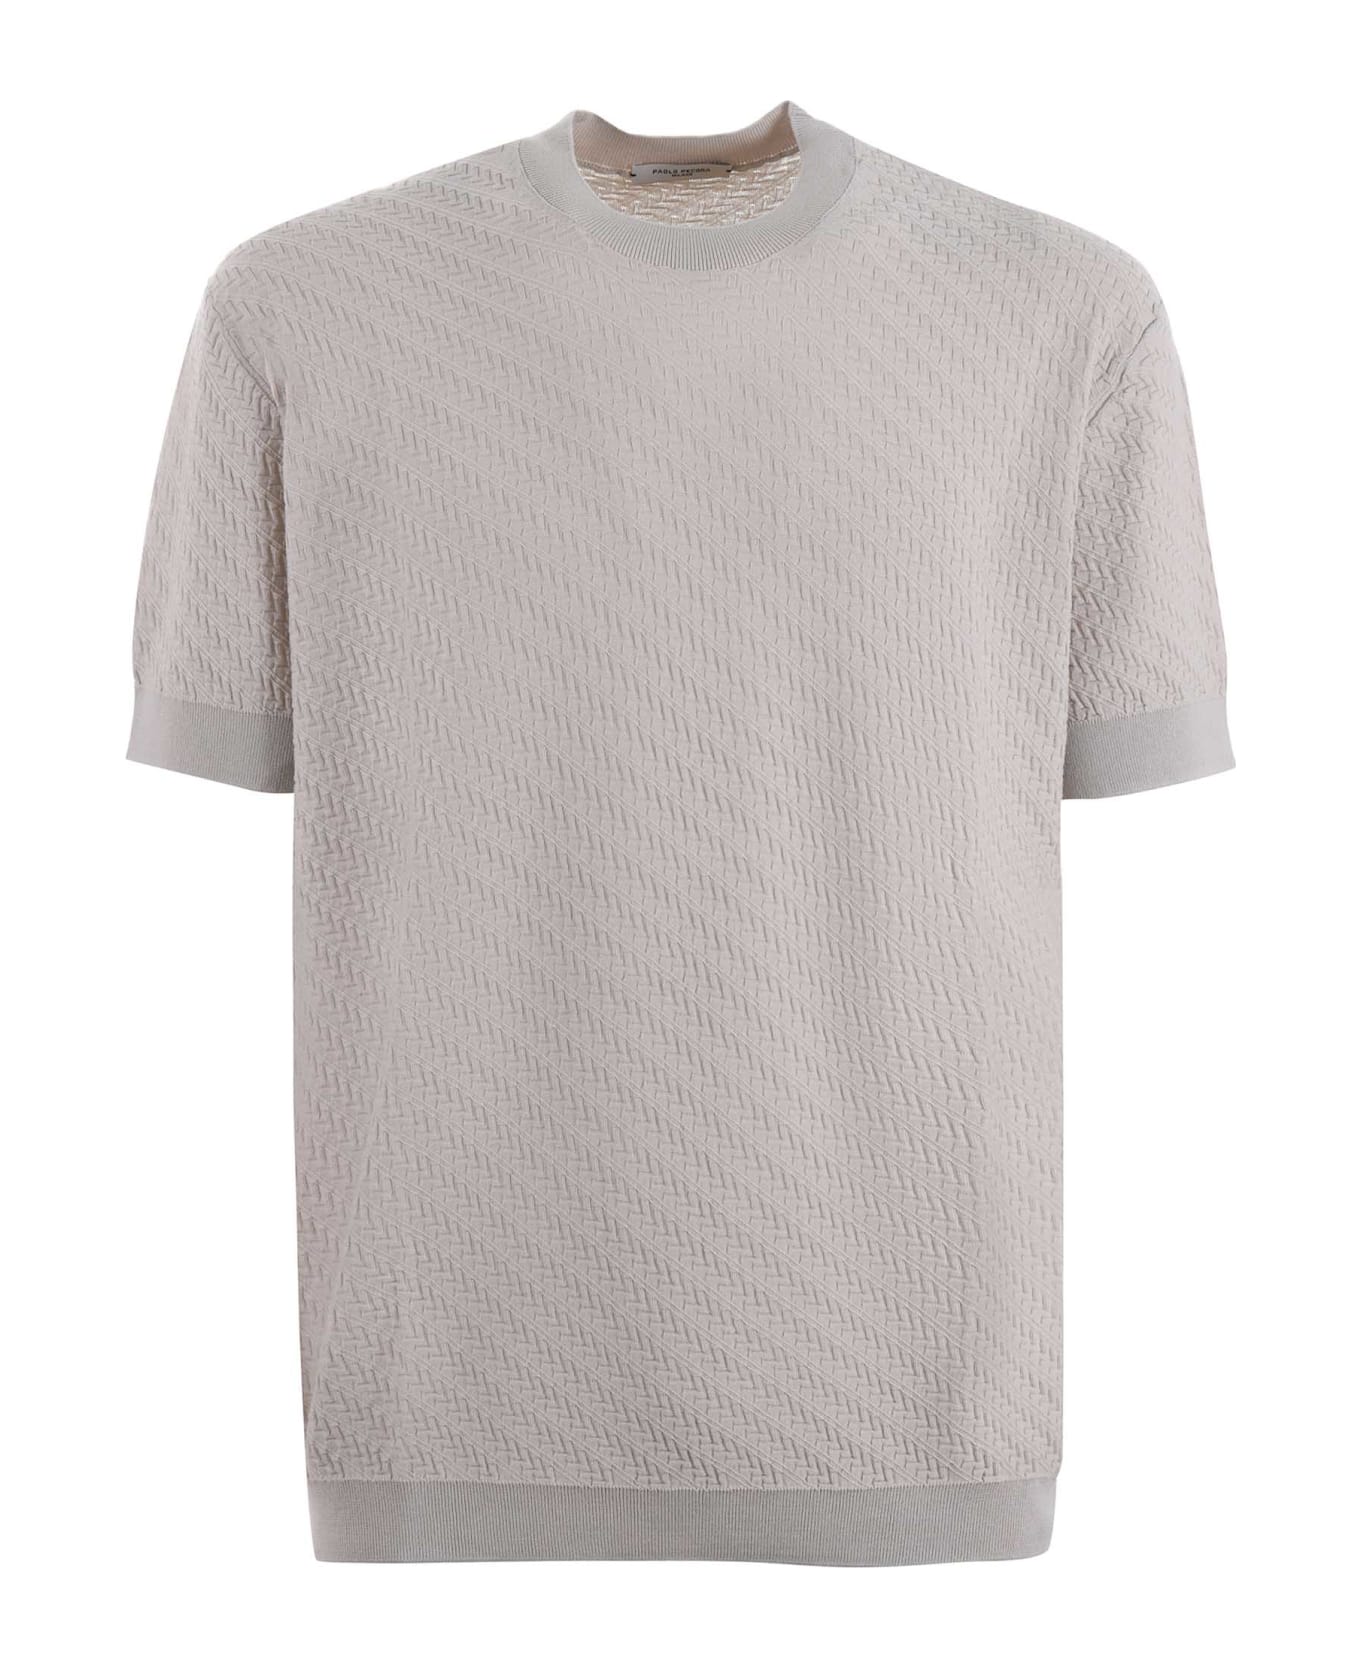 Paolo Pecora T-shirt In Light Cotton Thread - Beige chiaro シャツ